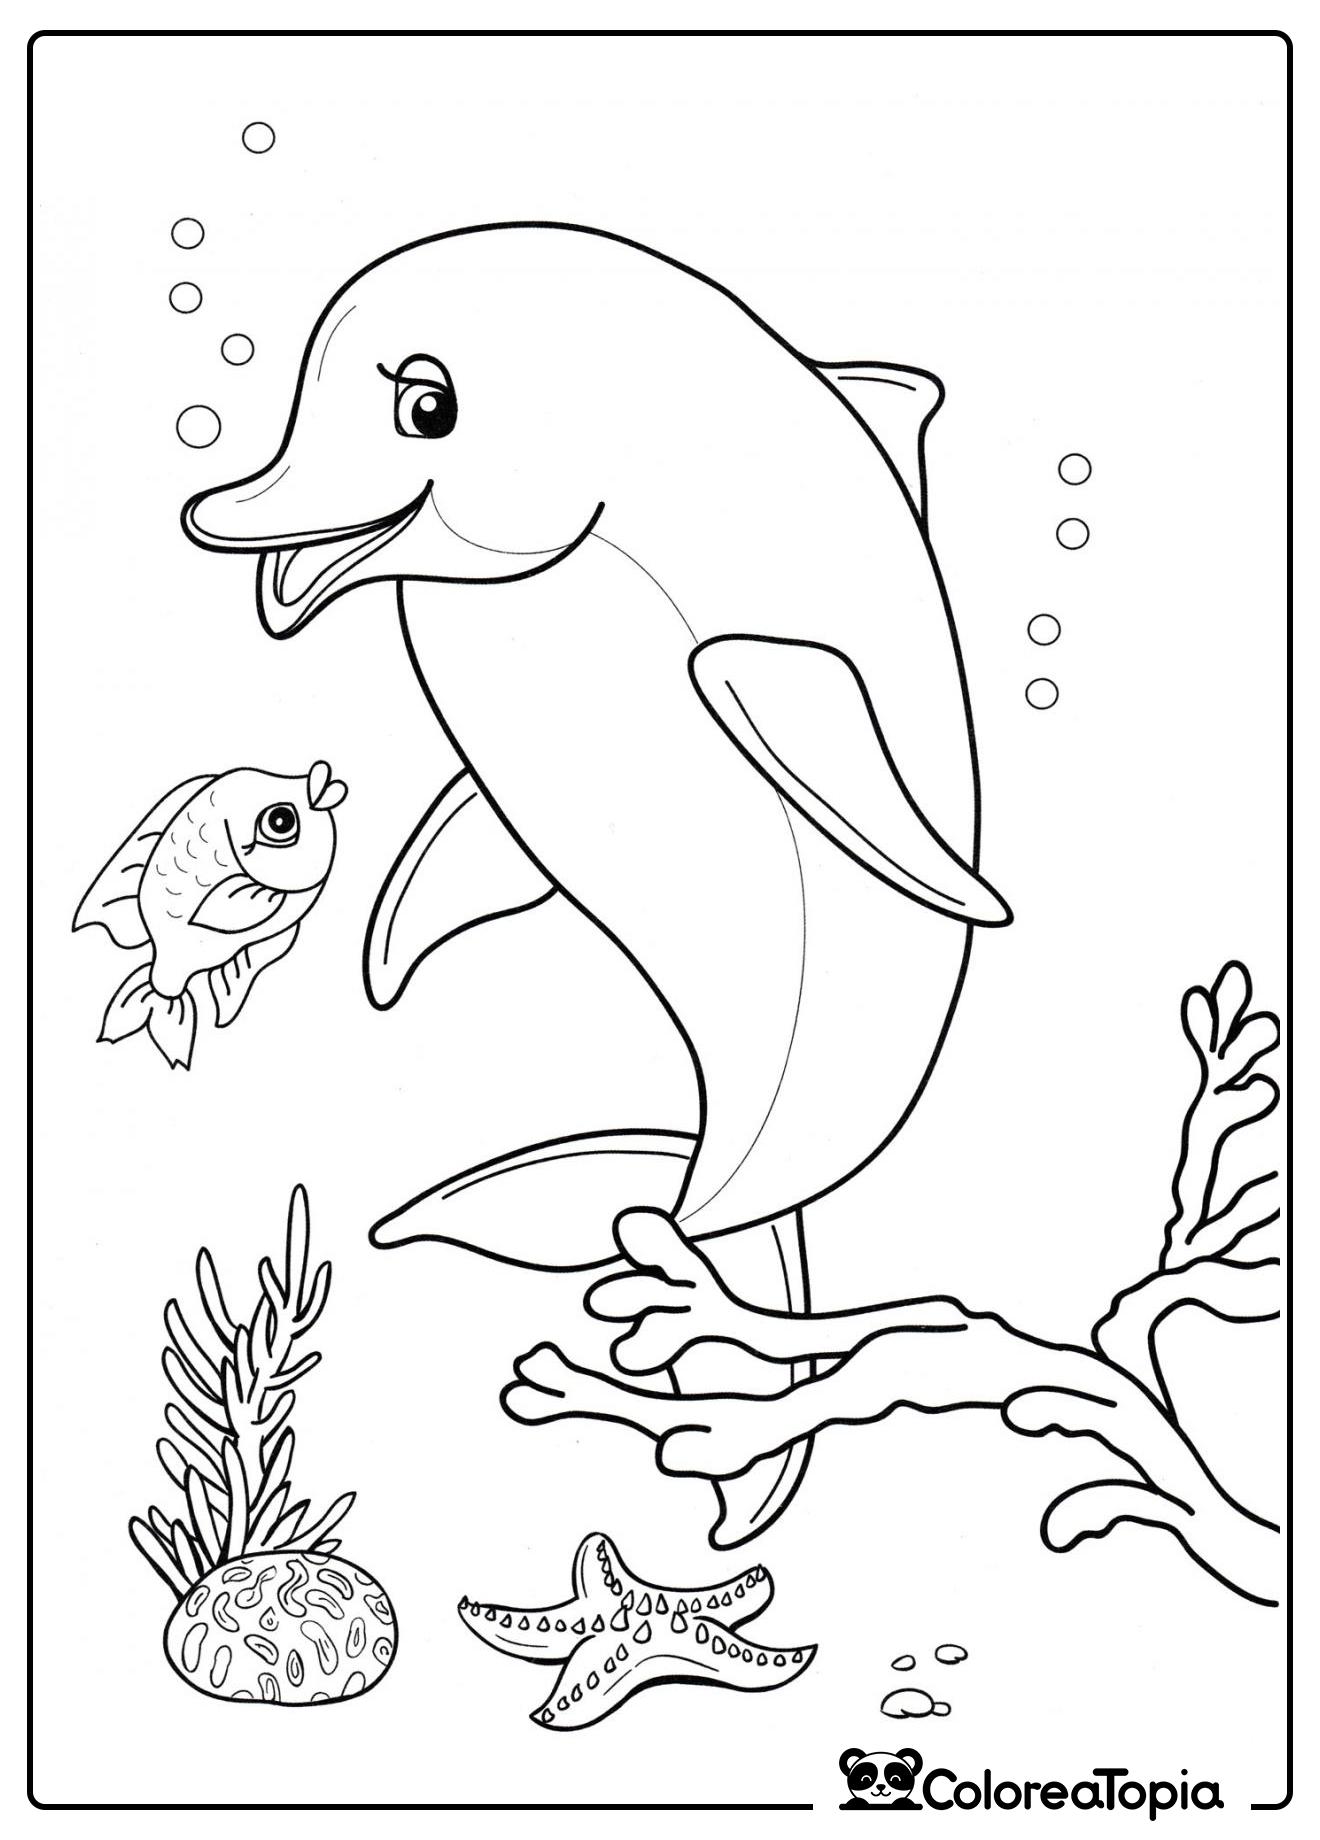 El delfín nada con los peces - dibujo para colorear